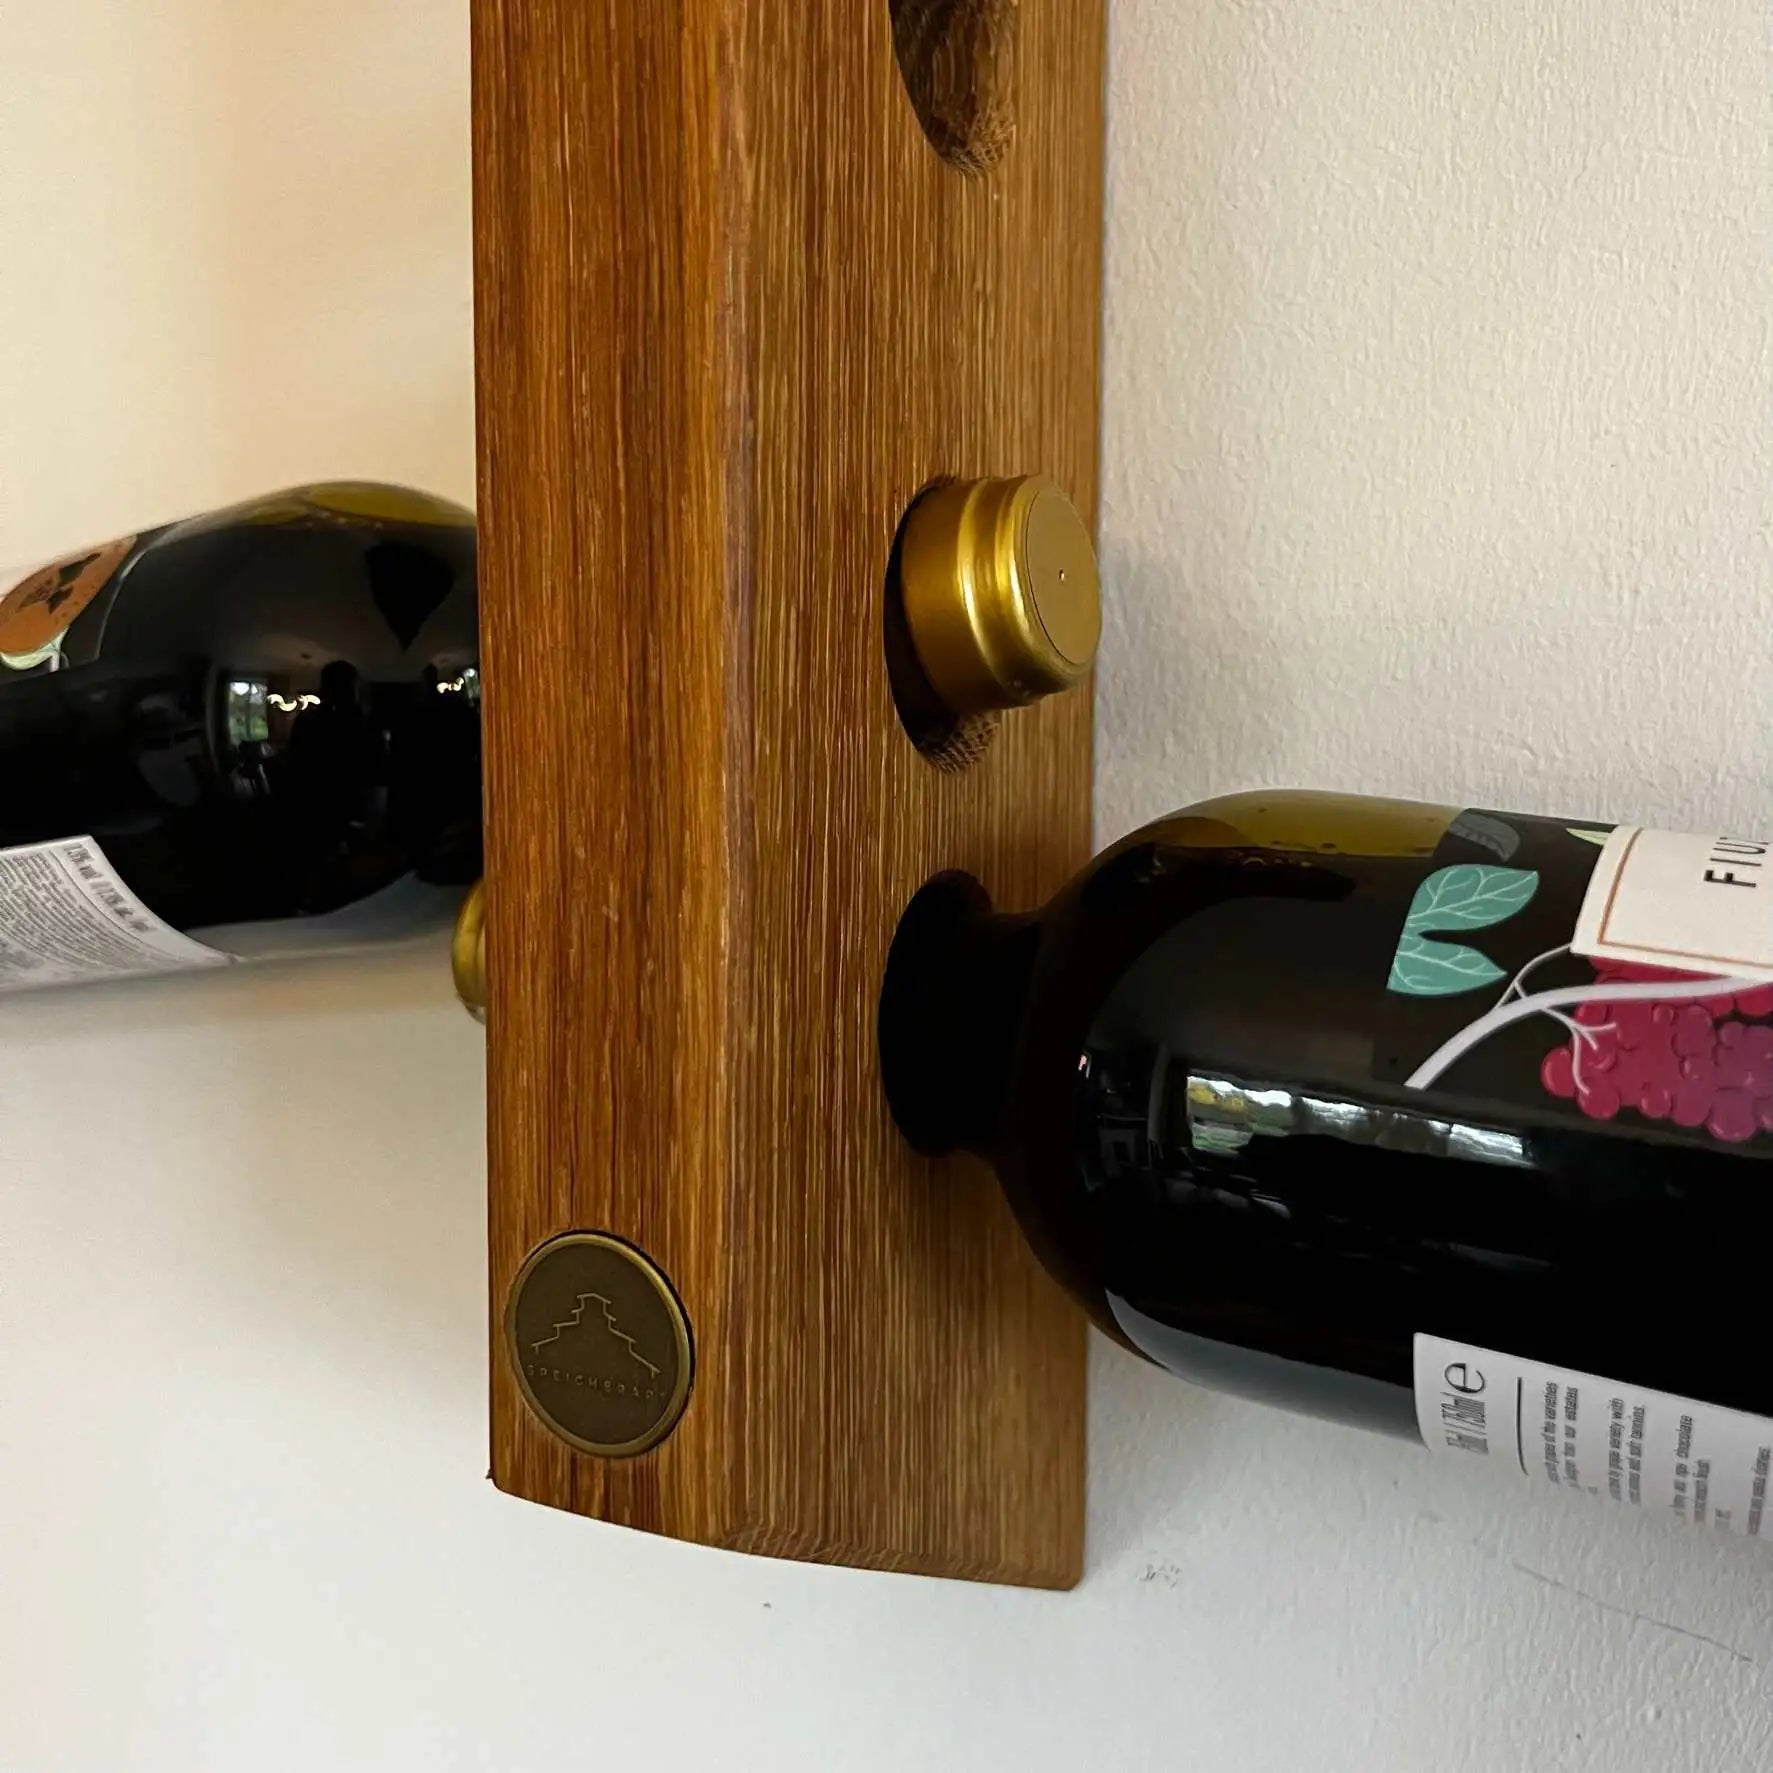 Flaschenregal aus Holz: Deine Weinsammlung verdient ein elegantes Zuhause.